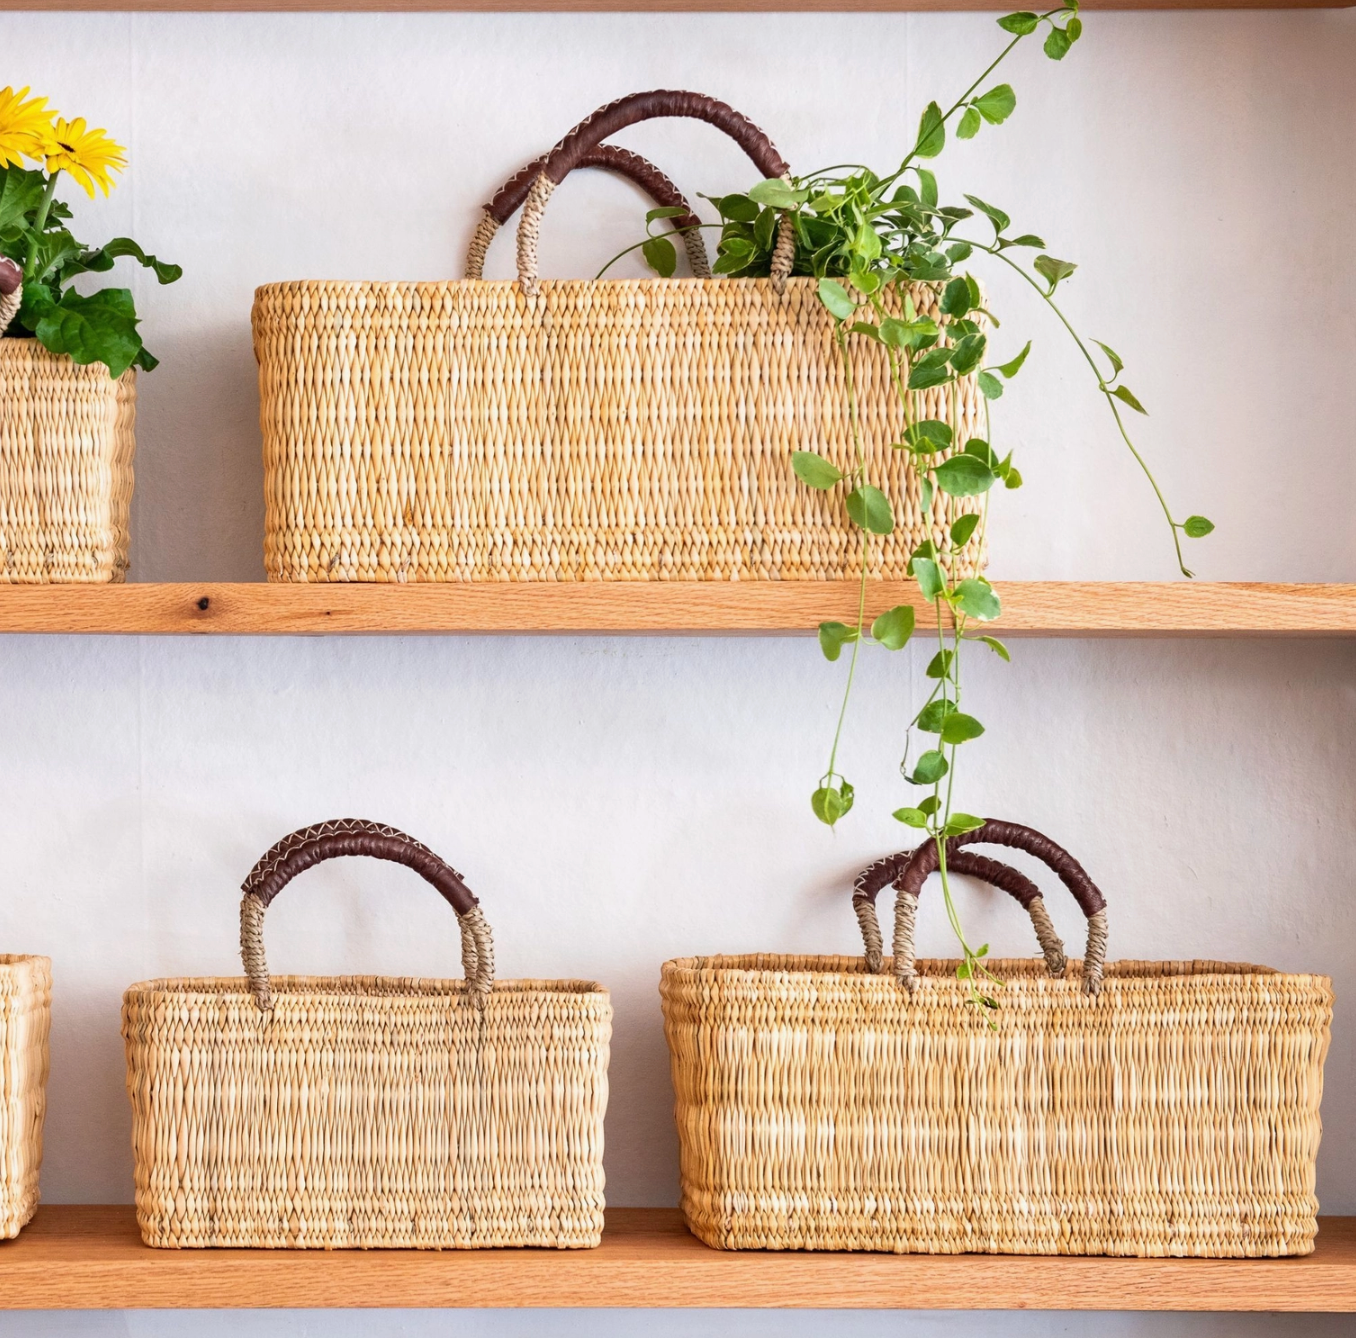 Garden Baskets